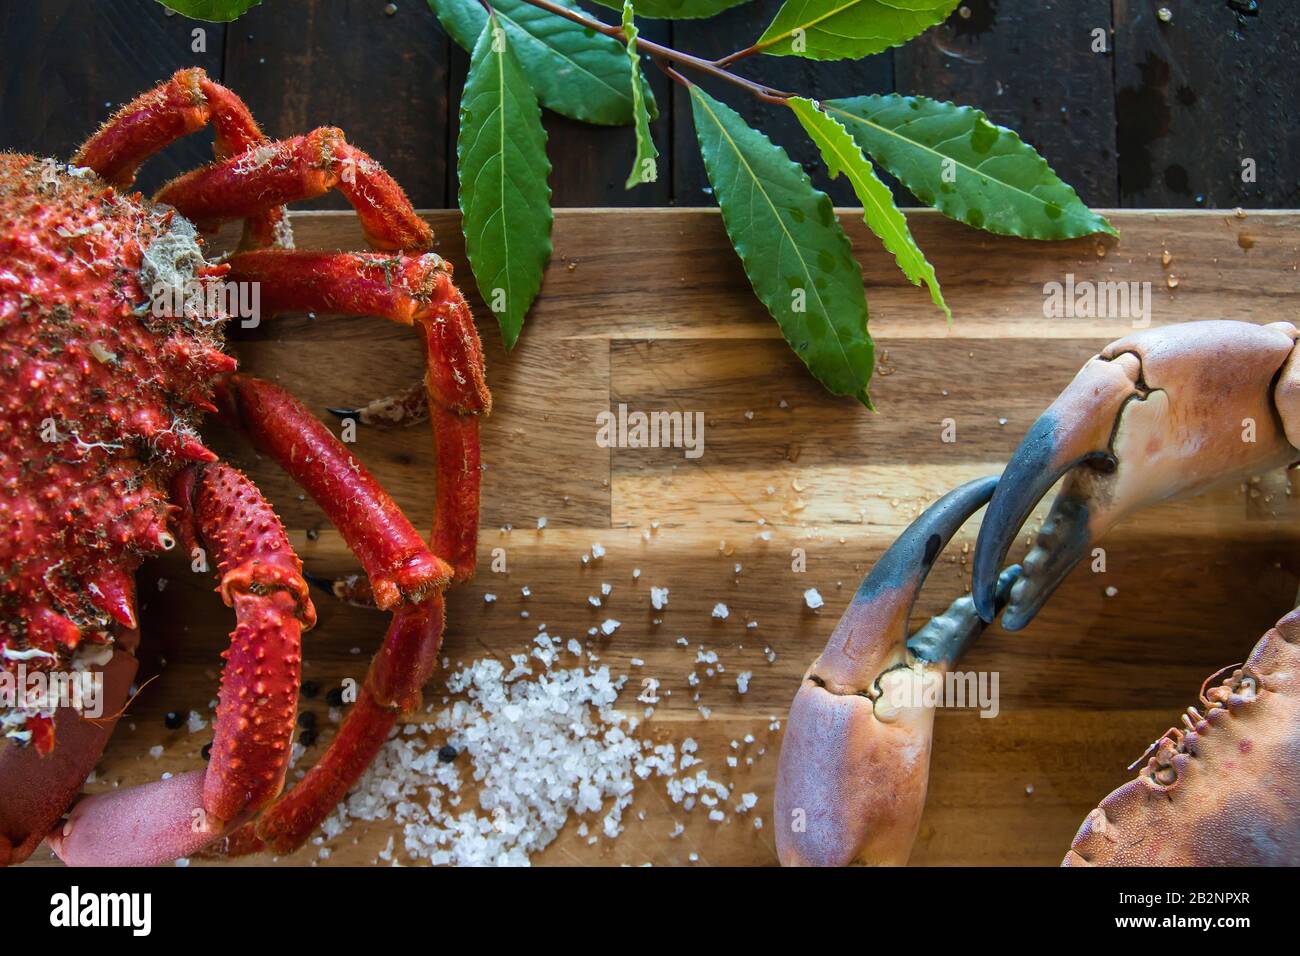 Crabe brun bouilli et crabe araignée dans le plan de cuisine en bois, délicieux préparation de fruits de mer Banque D'Images